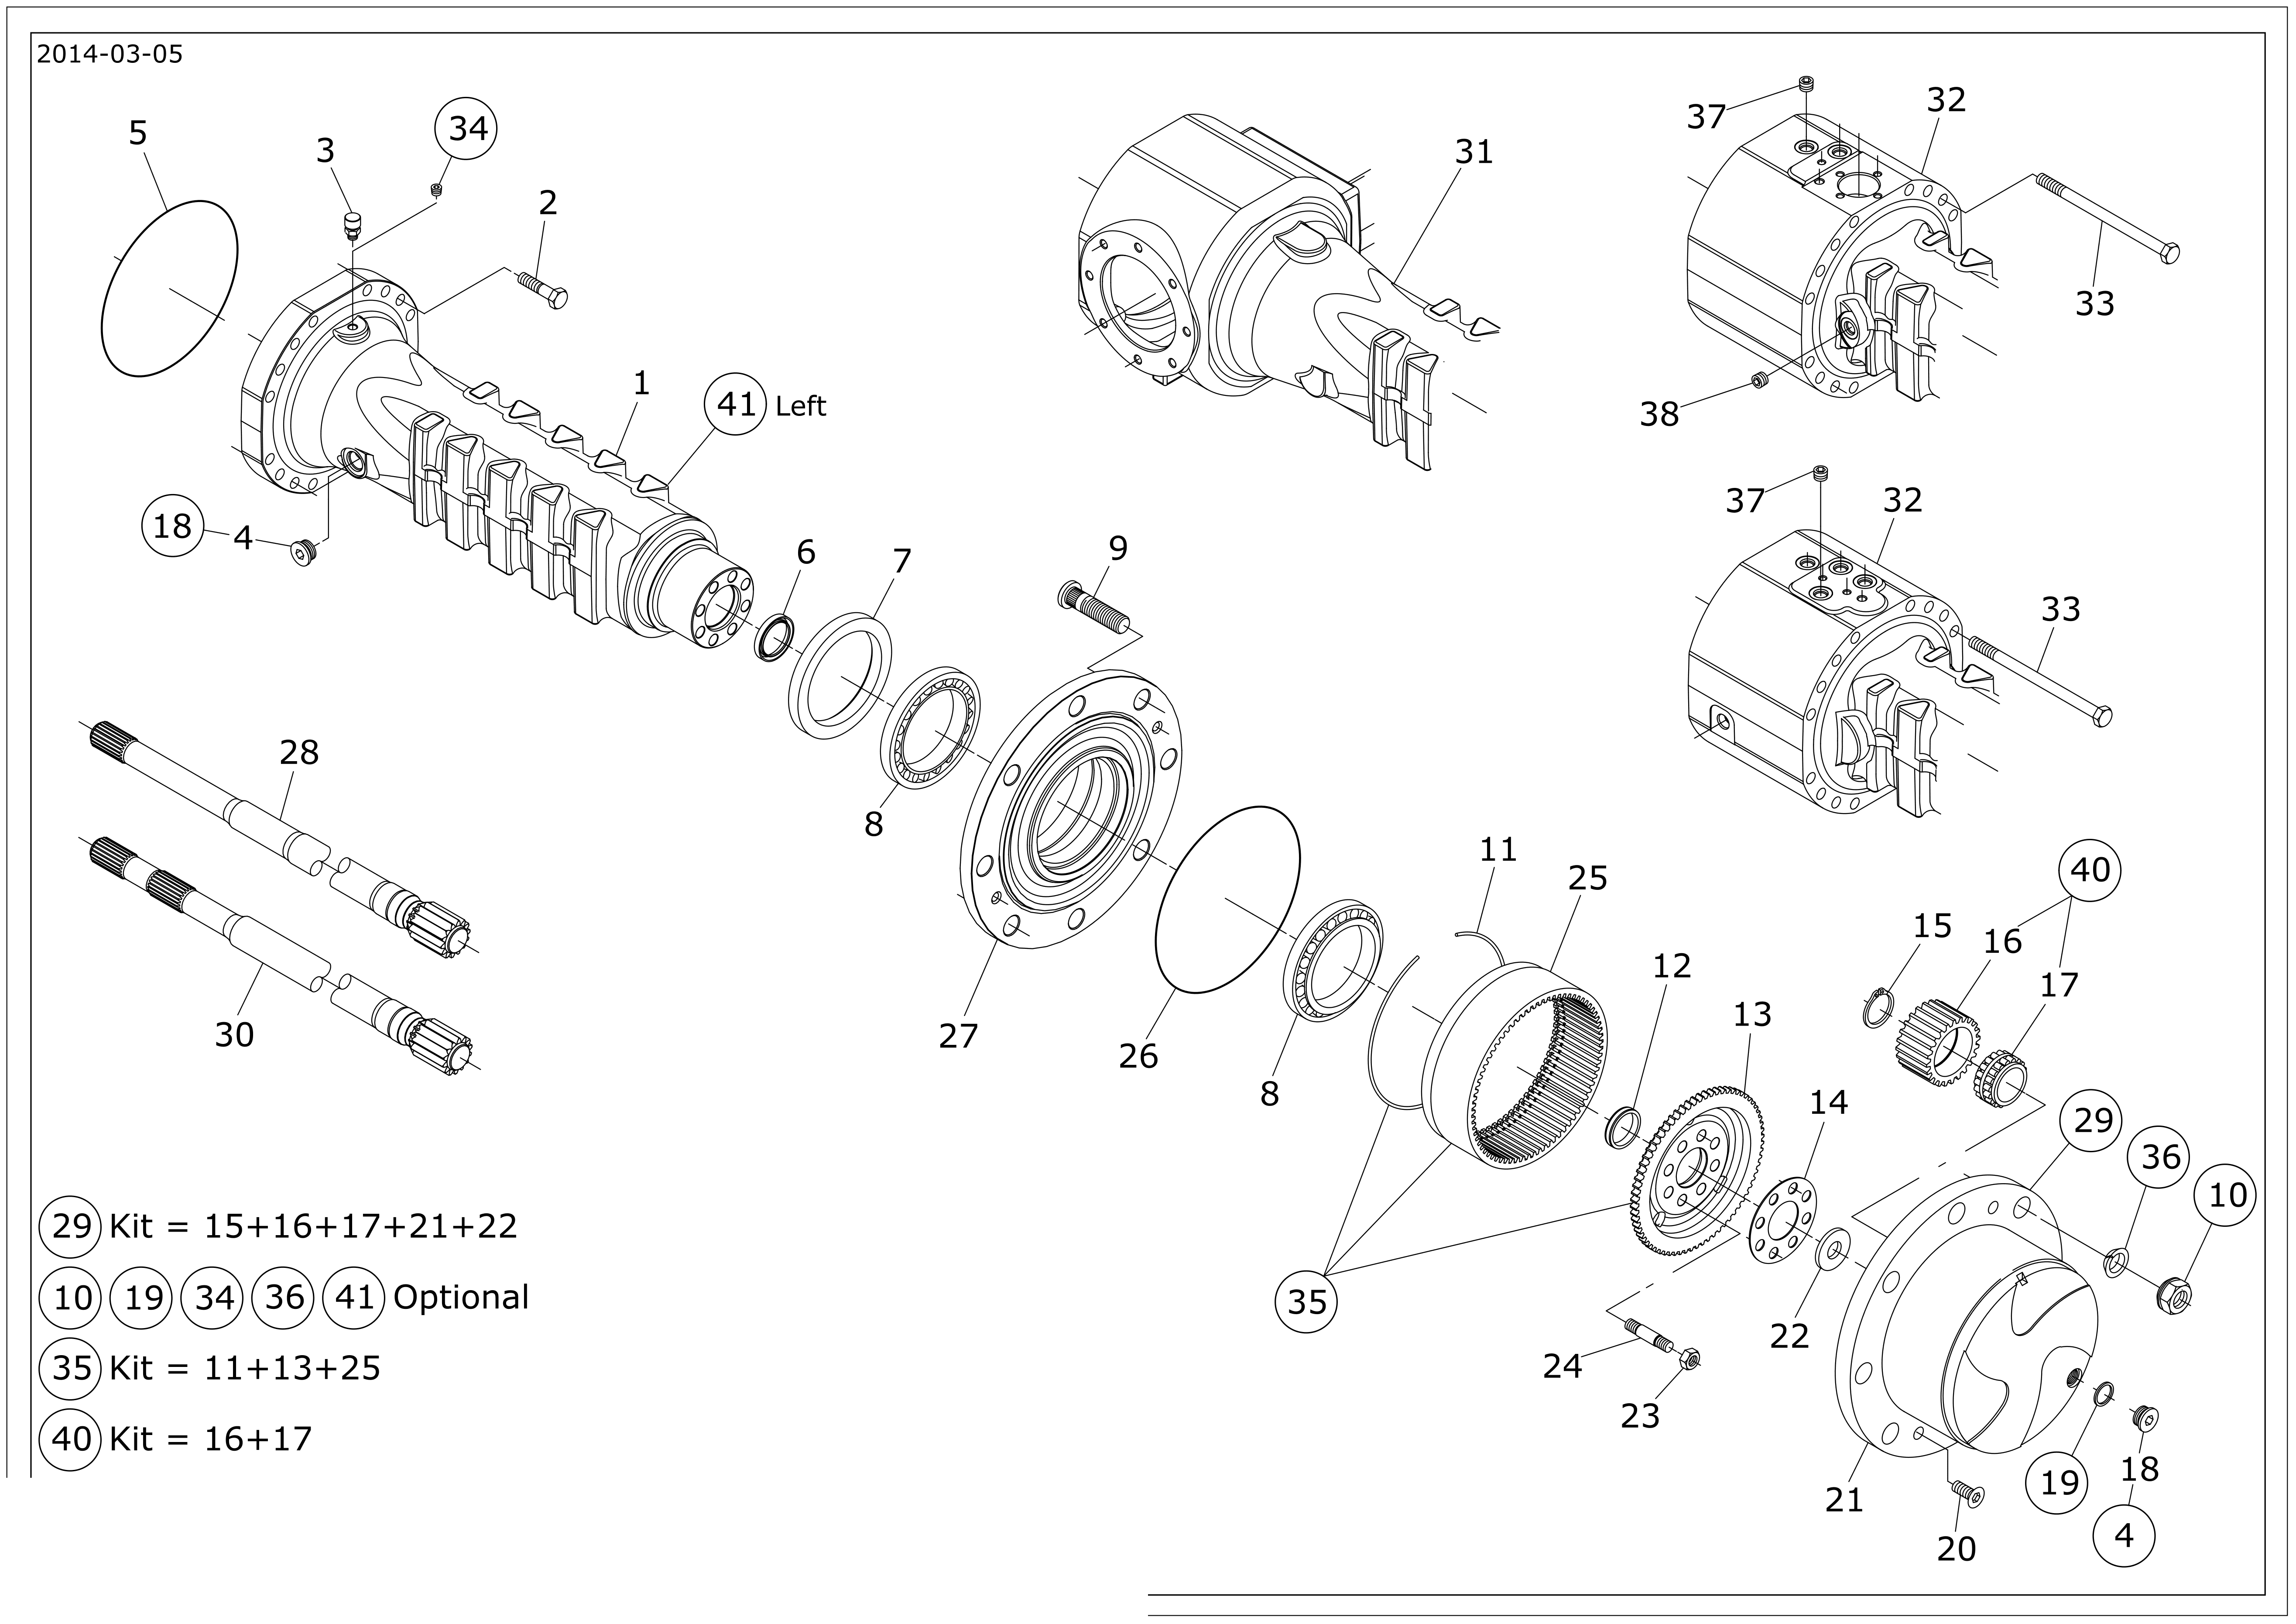 drawing for SCHOPF MASCHINENBAU GMBH 101170 - SHEET (figure 2)